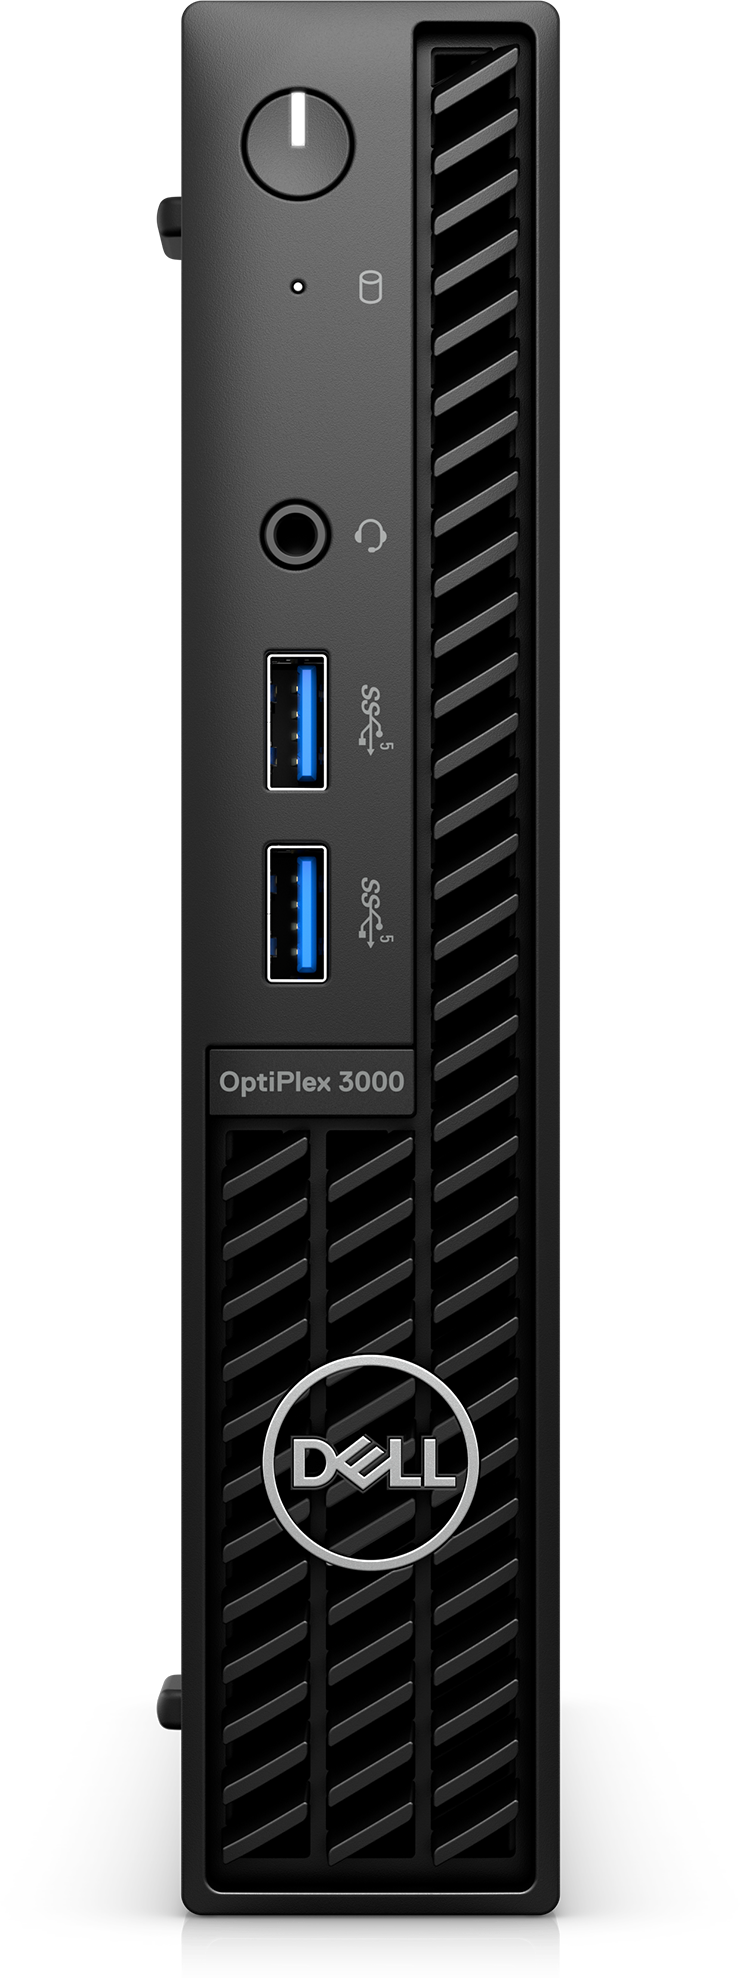 OptiPlex 3000マイクロ フォーム ファクター：OptiPlex PC | Dell 日本